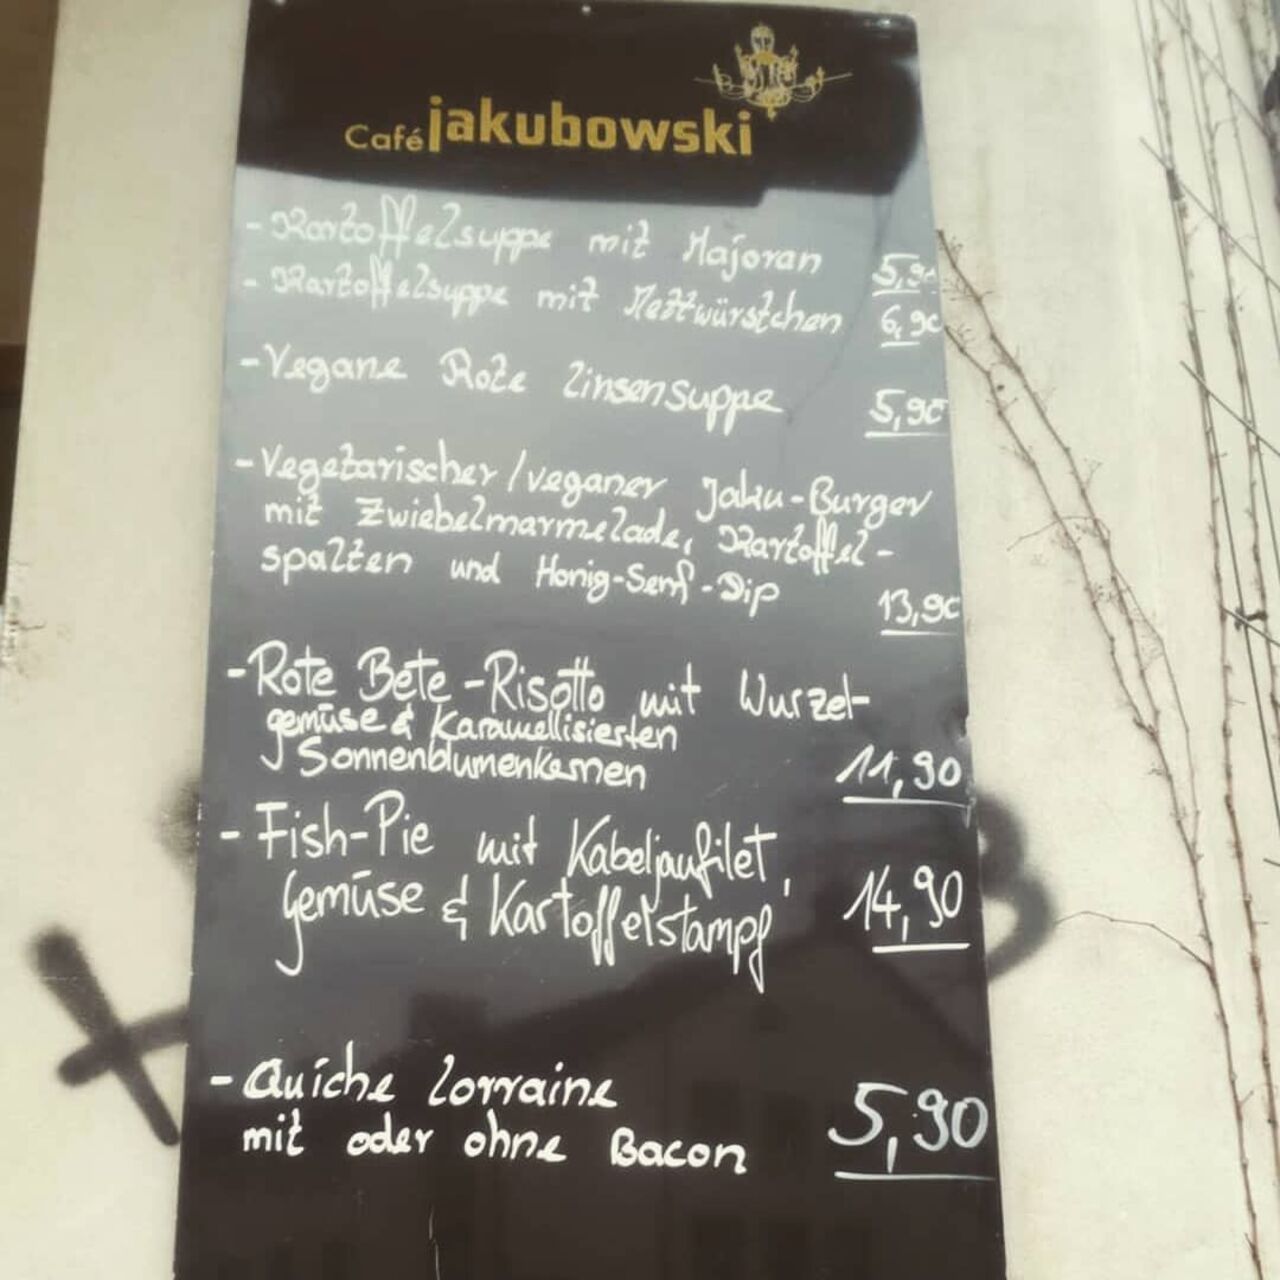 A photo of Café Jakubowski